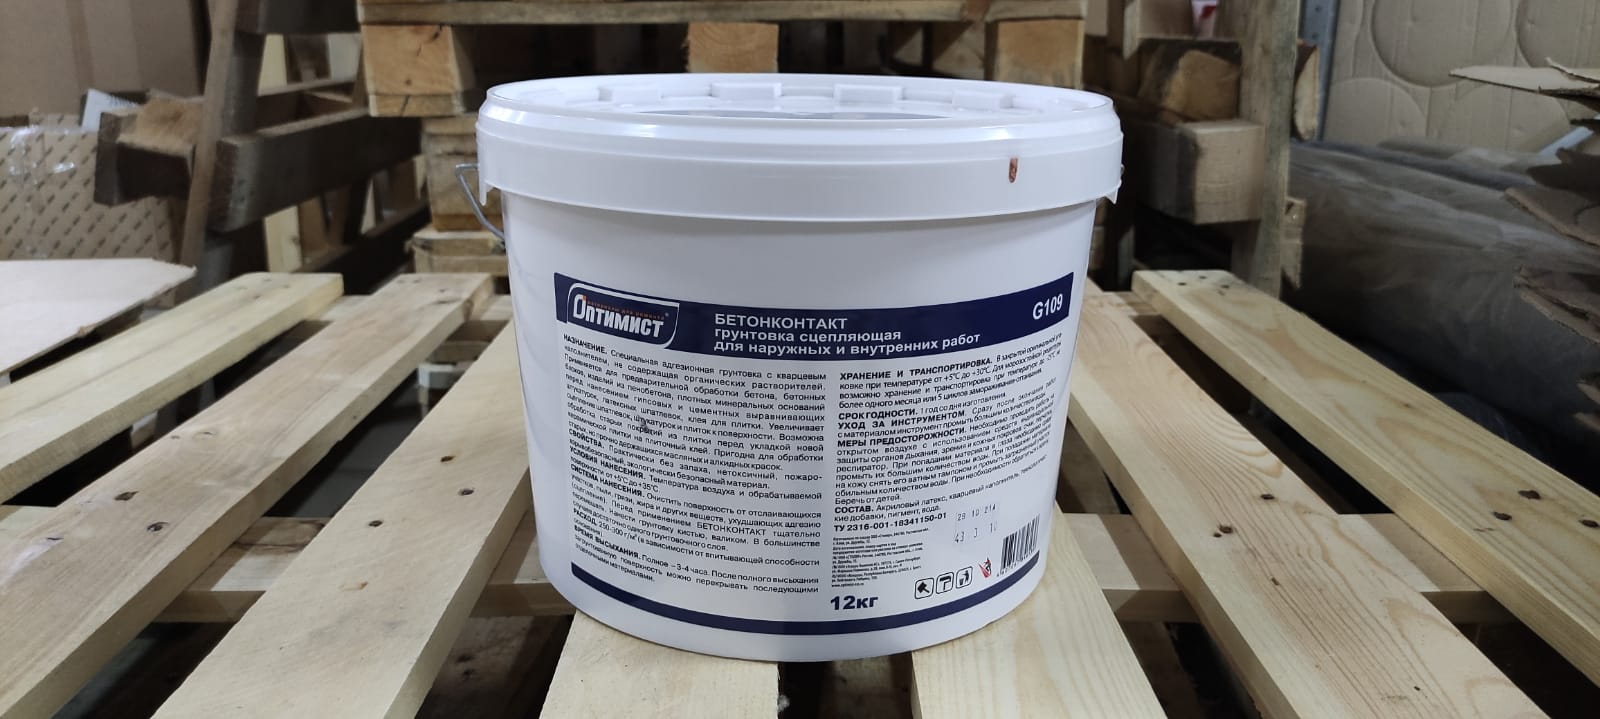 Грунтовка бетонконтакт (бетоноконтакт) для стен и пола морозостойкая 12 кг ОПТИМИСТ G 109